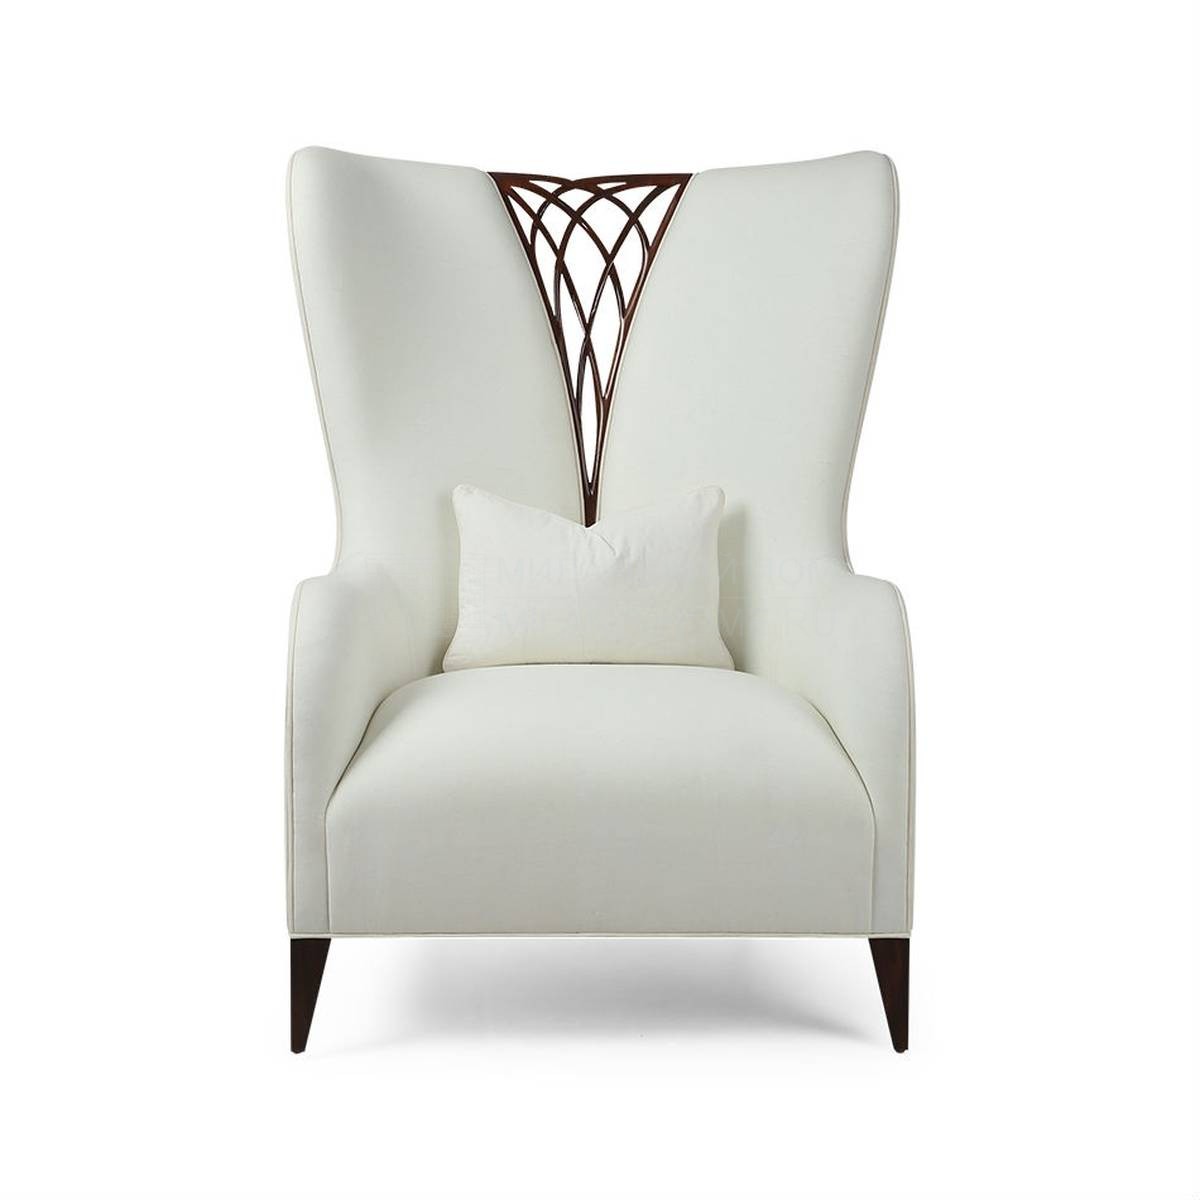 Кресло Lacemaker armchair из США фабрики CHRISTOPHER GUY